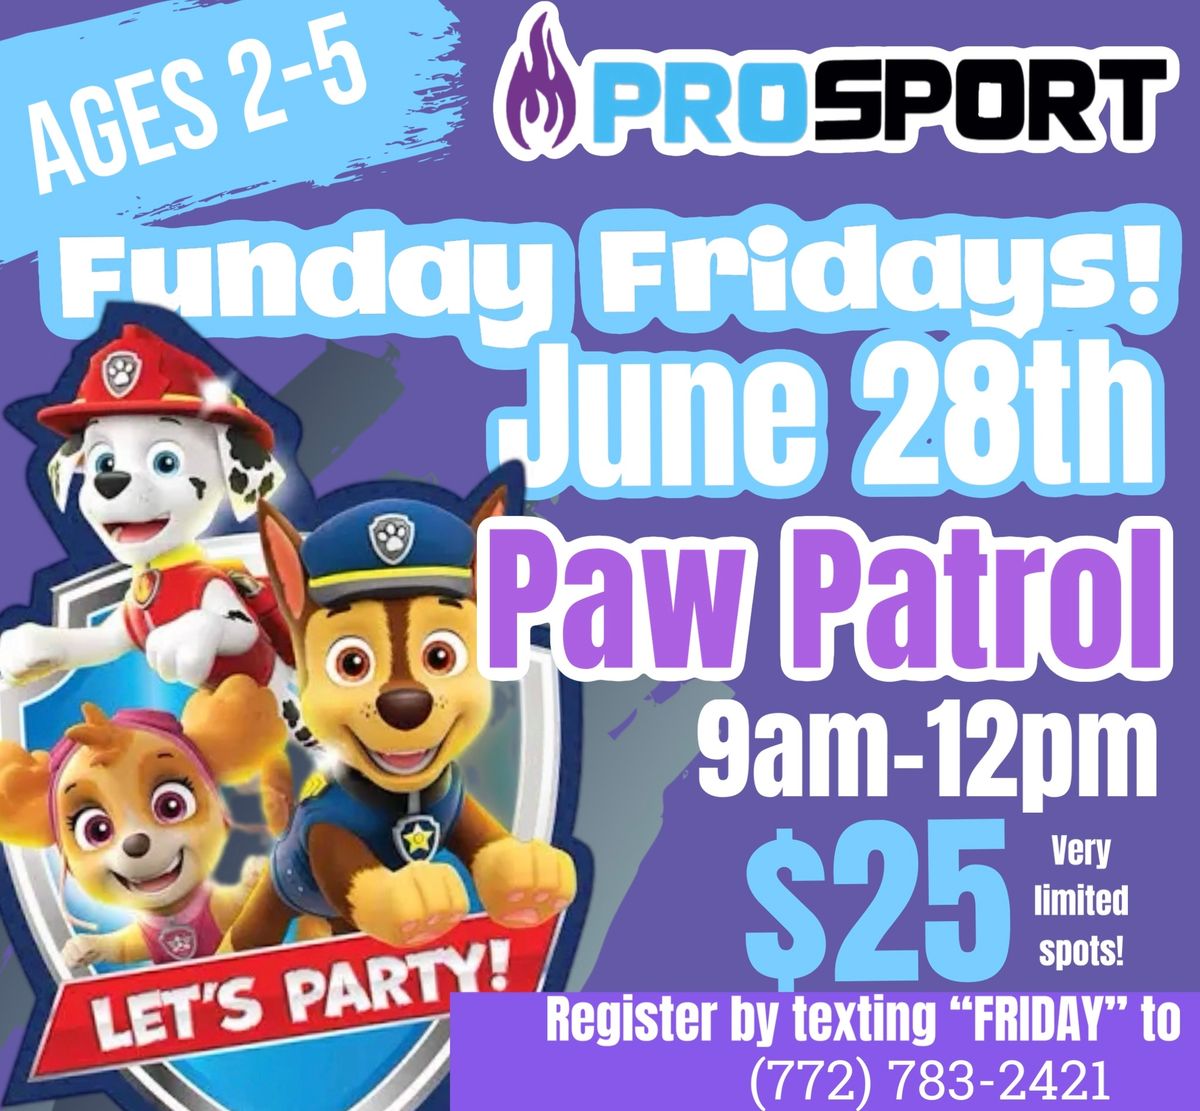 Preschool FUNday Friday - Paw Patrol